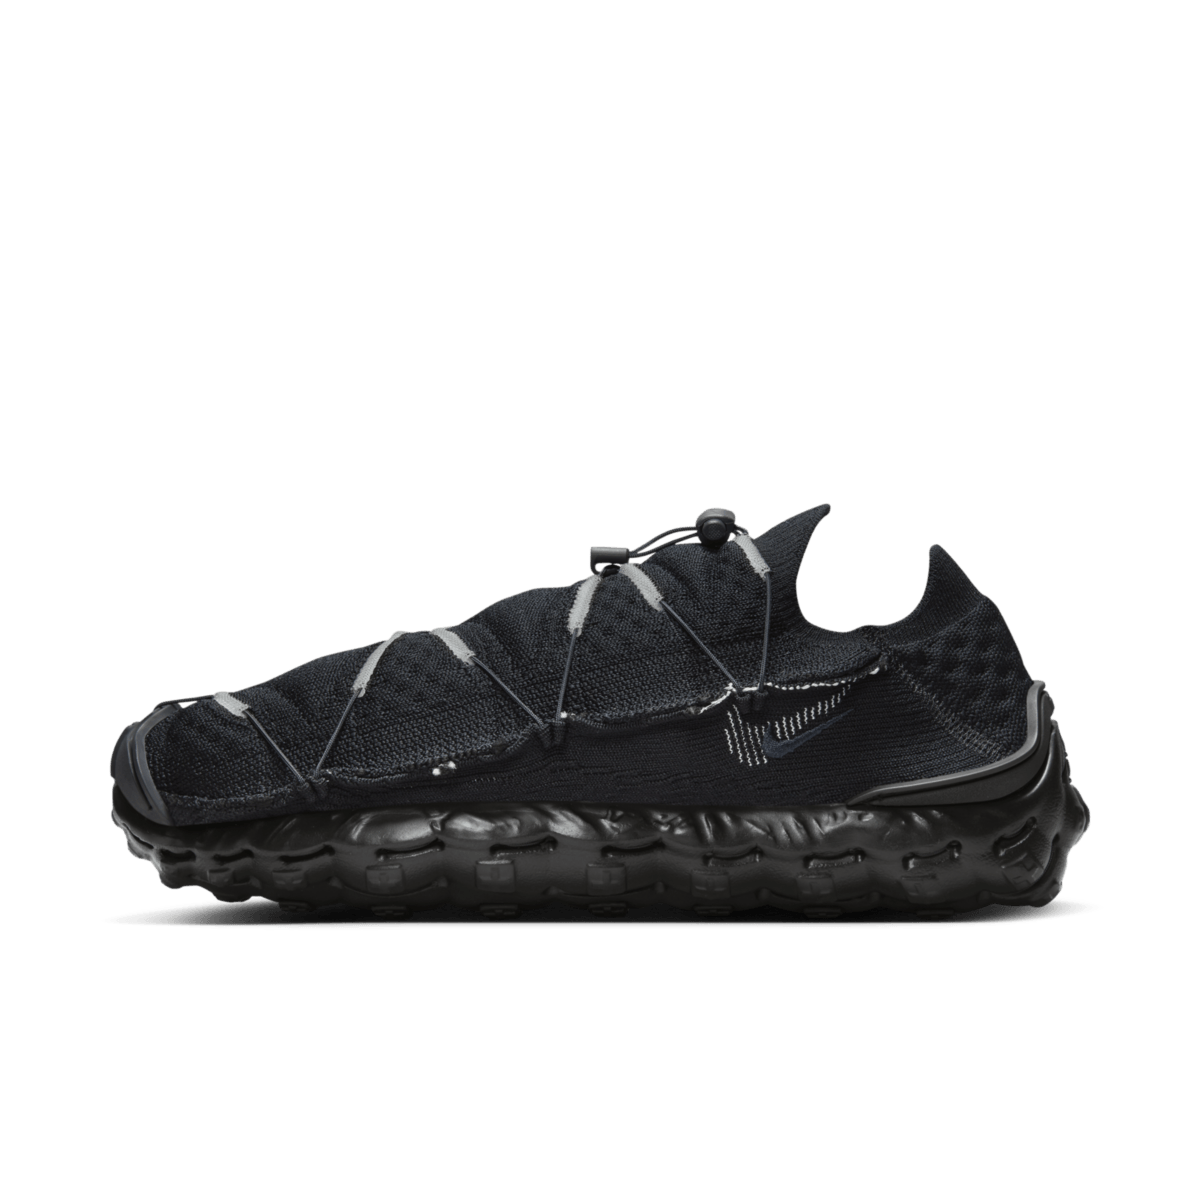 Nike ISPA Mindbody 'Black Anthracite' DH7546-003